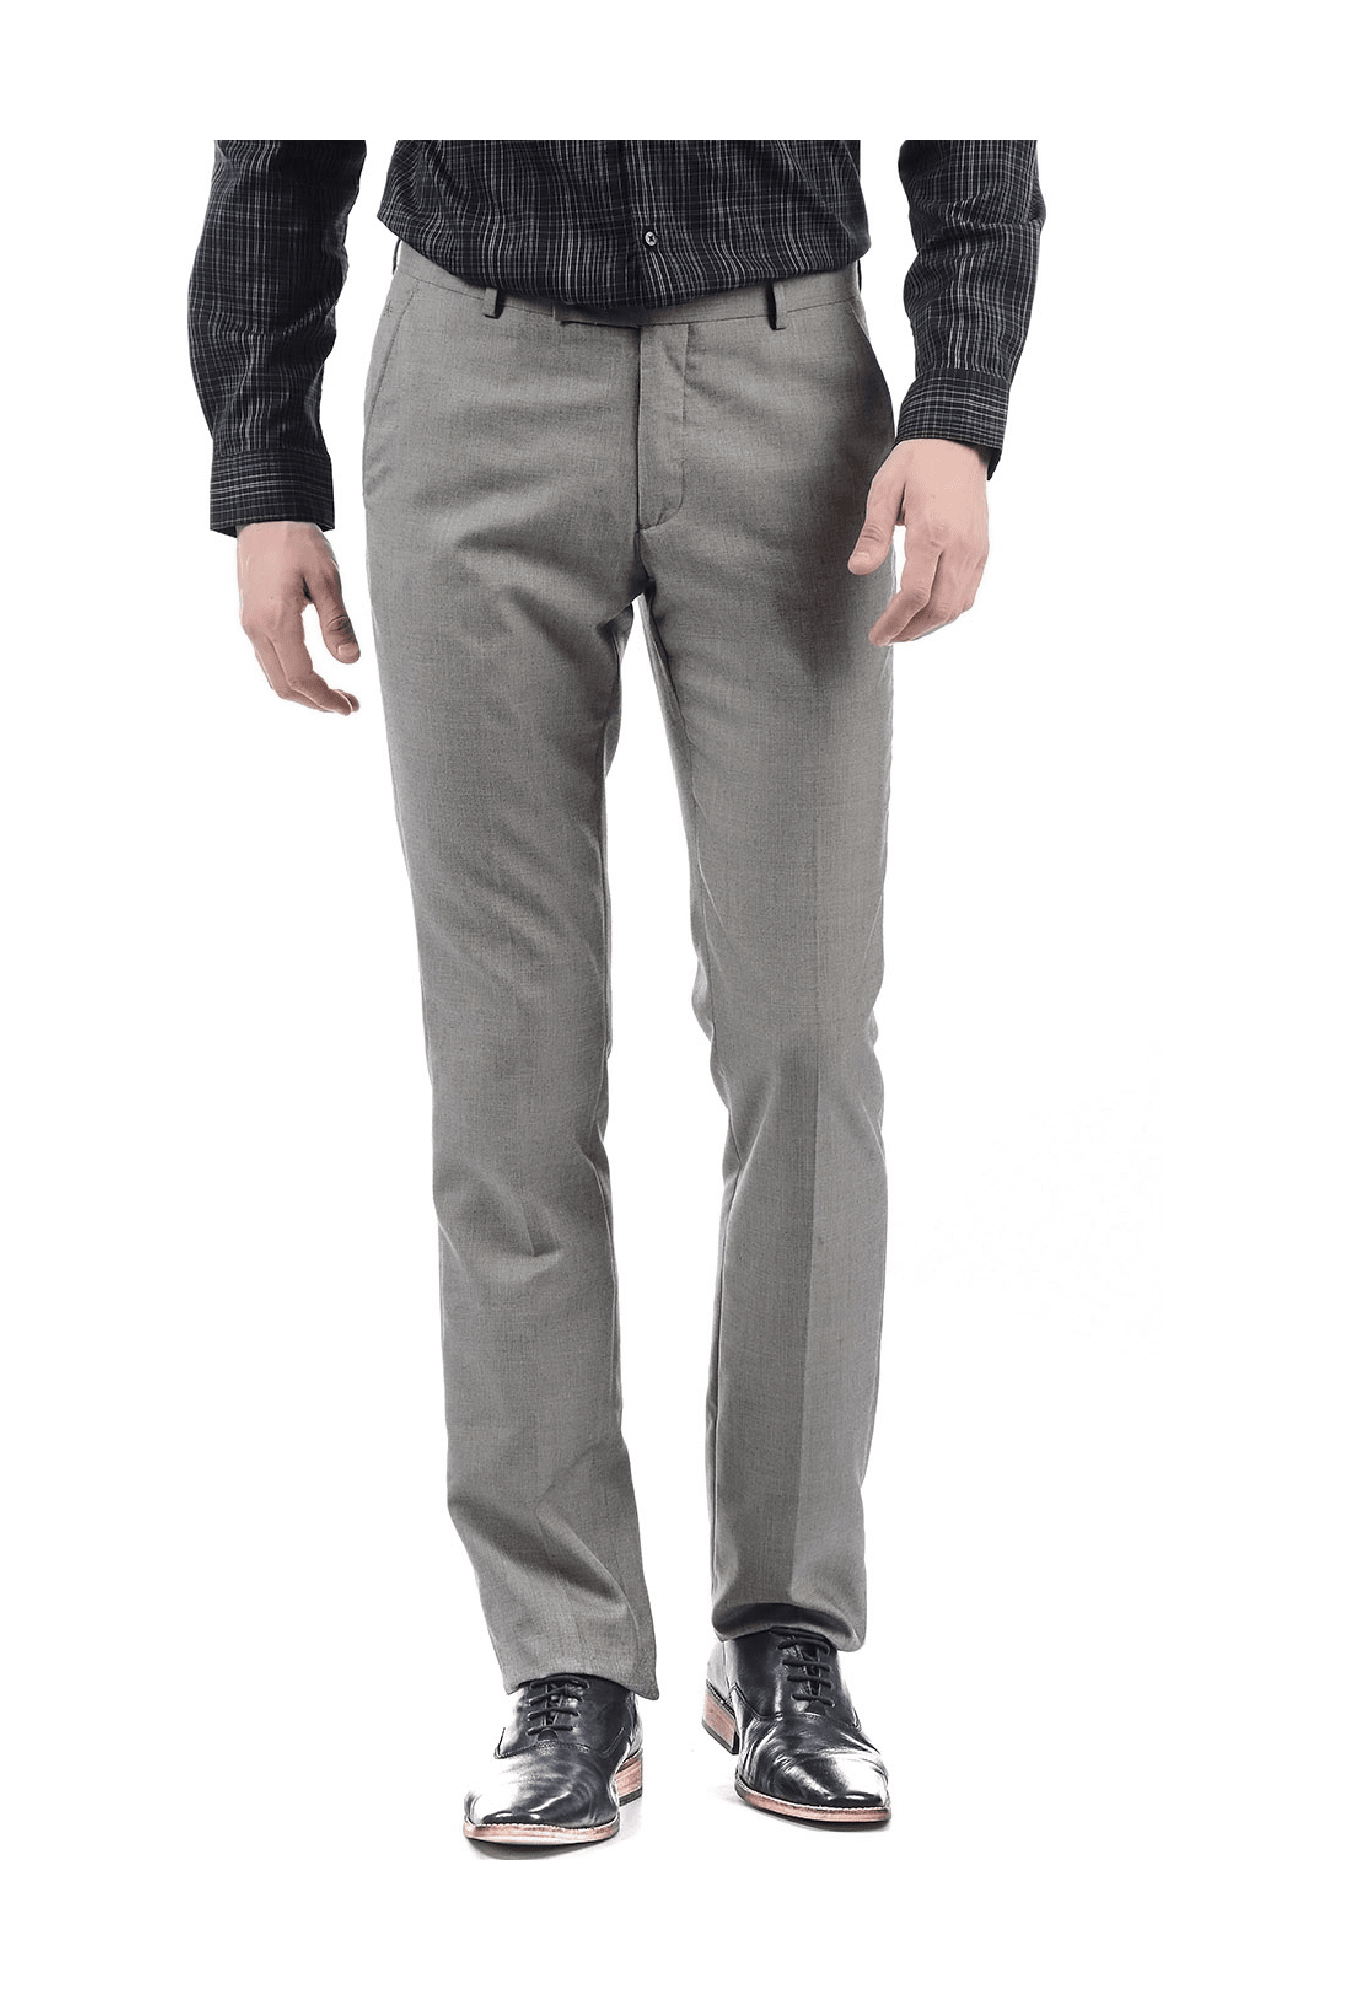 Arrow Newyork Slim Fit Men Grey Trousers  Buy Arrow Newyork Slim Fit Men  Grey Trousers Online at Best Prices in India  Flipkartcom